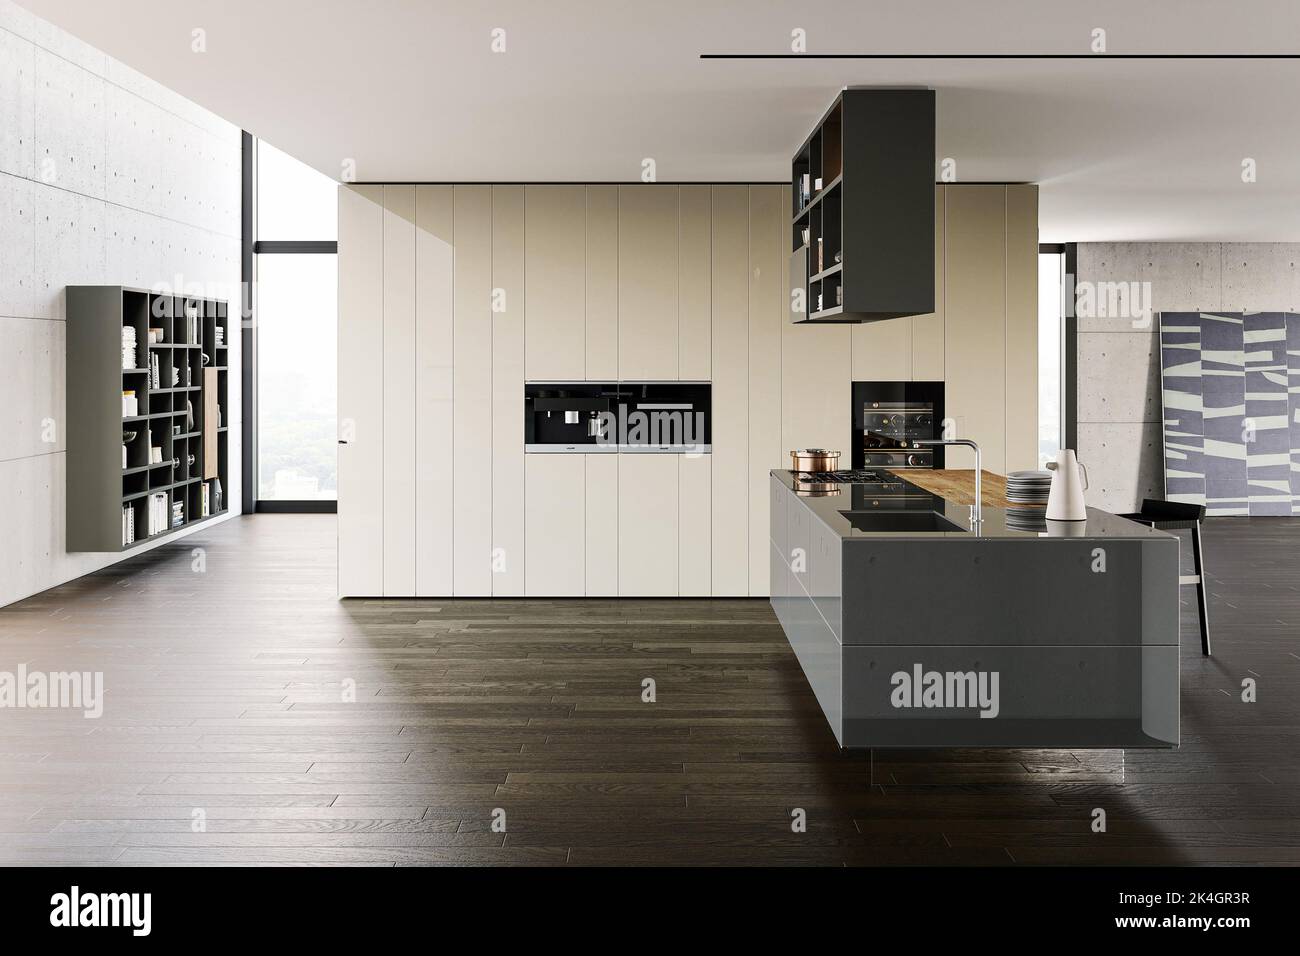 Intérieur moderne de style kithcen de luxe dans un style scandinave minimaliste Banque D'Images